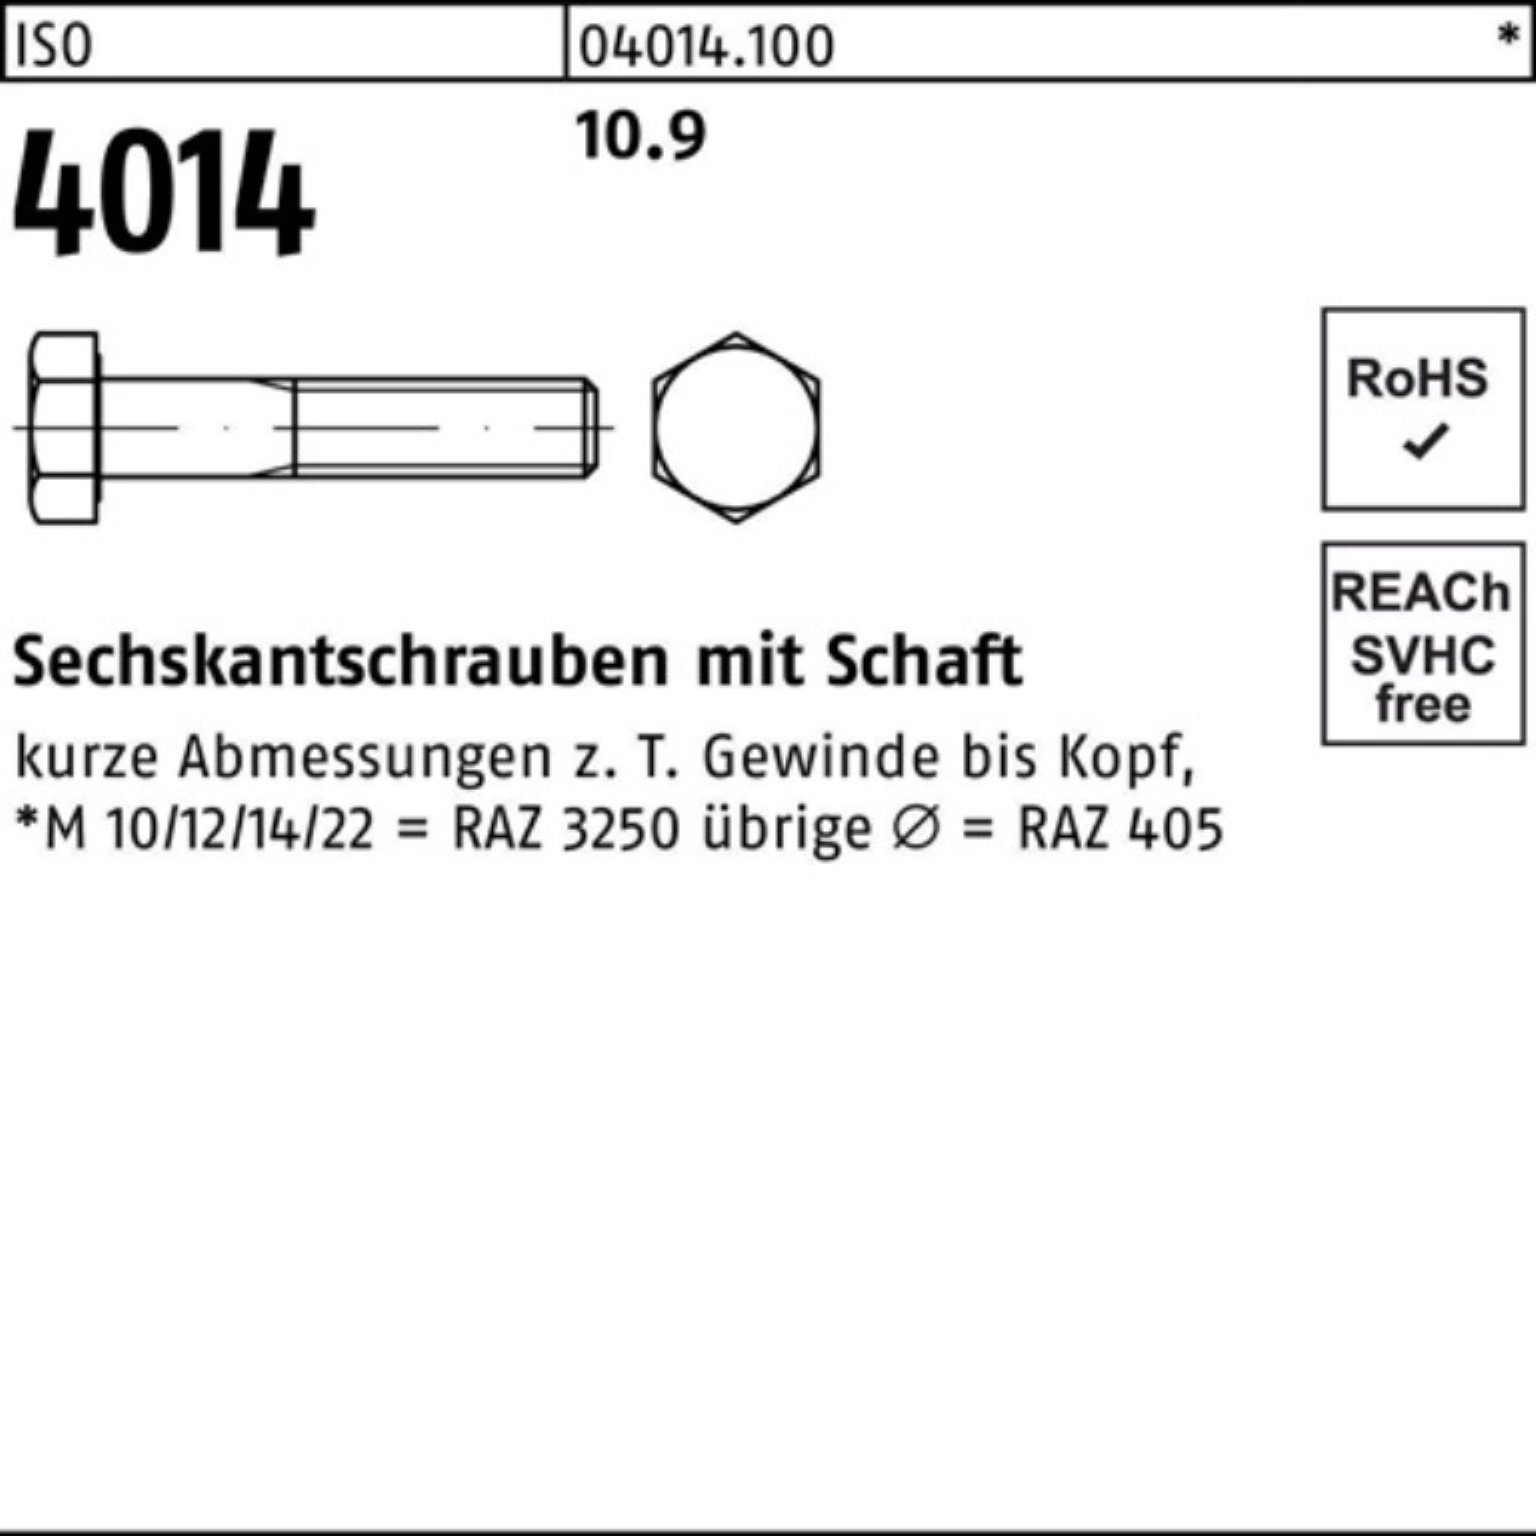 10.9 Bufab ISO Pack 4014 M48x 100er 300 Stück 1 Sechskantschraube IS Schaft Sechskantschraube